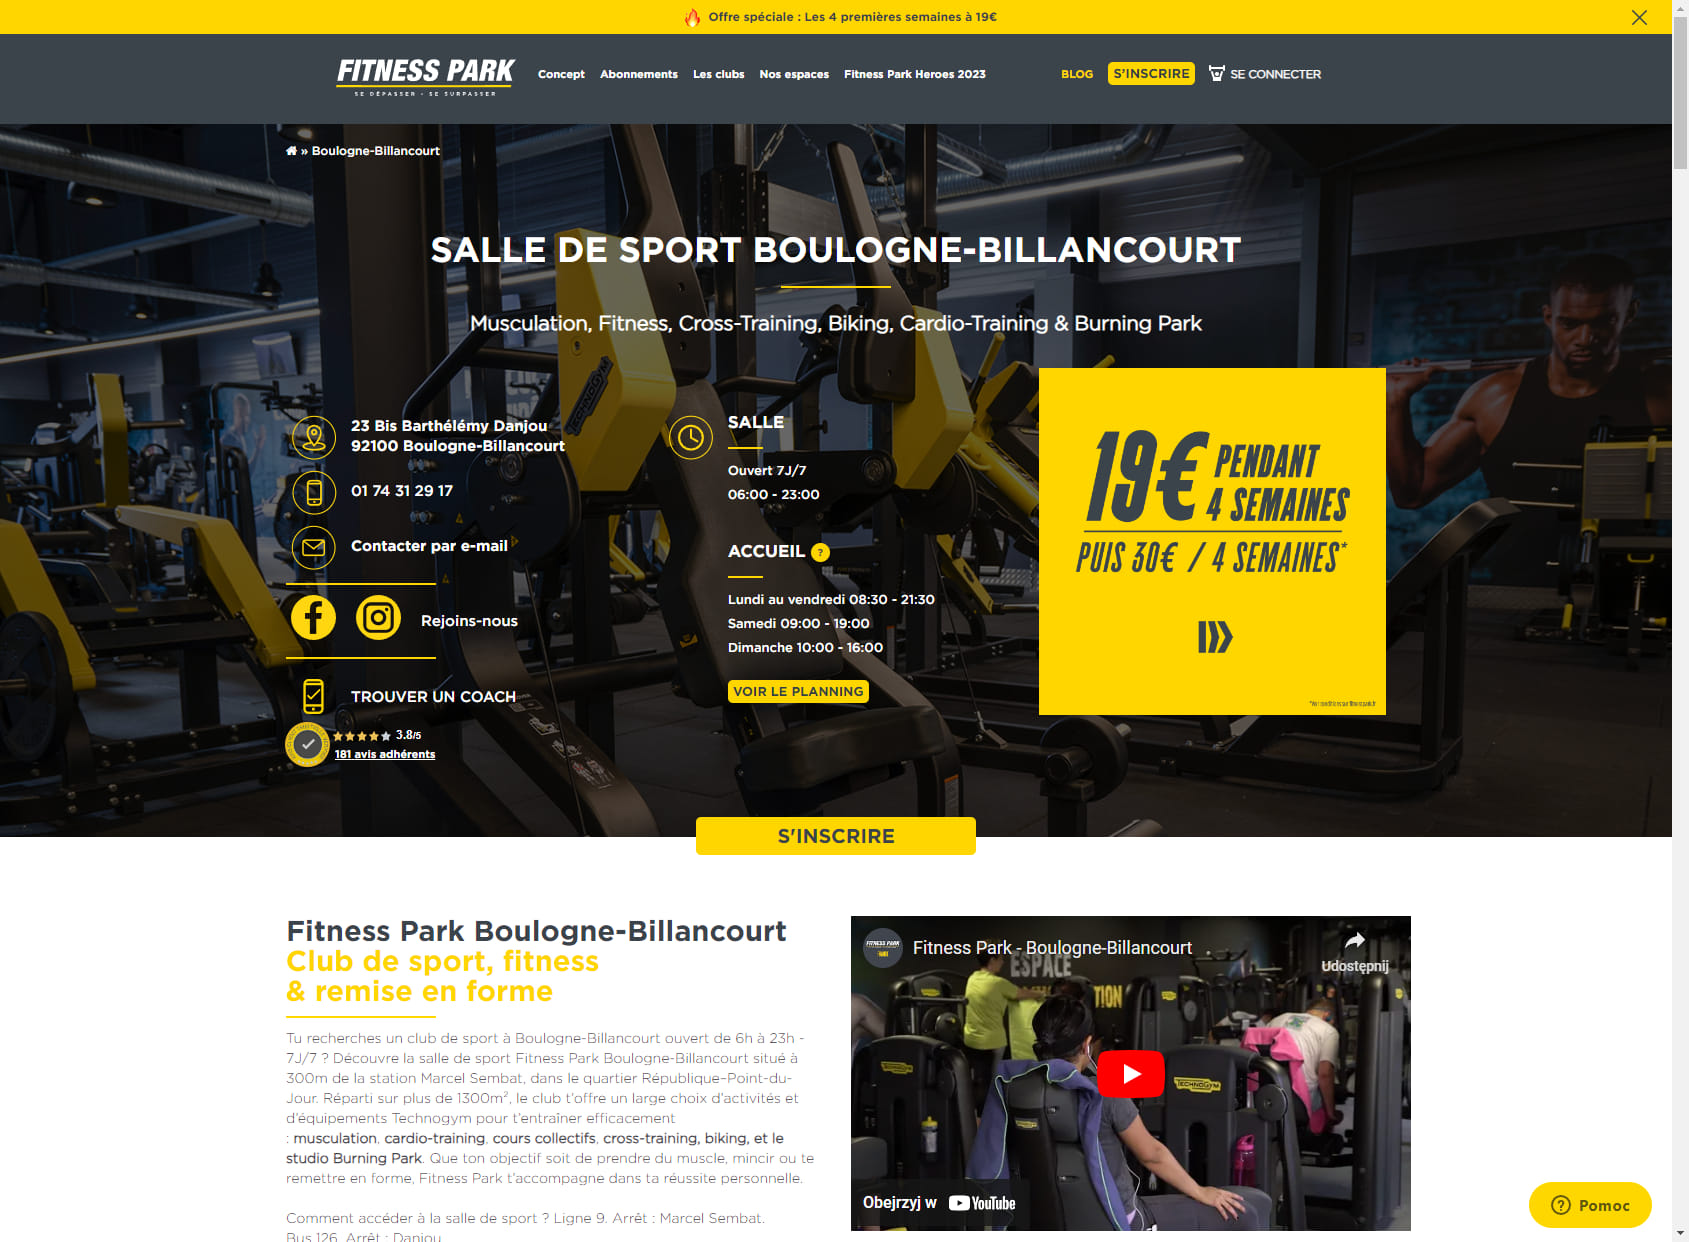 Salle de sport Boulogne-Billancourt - Fitness Park